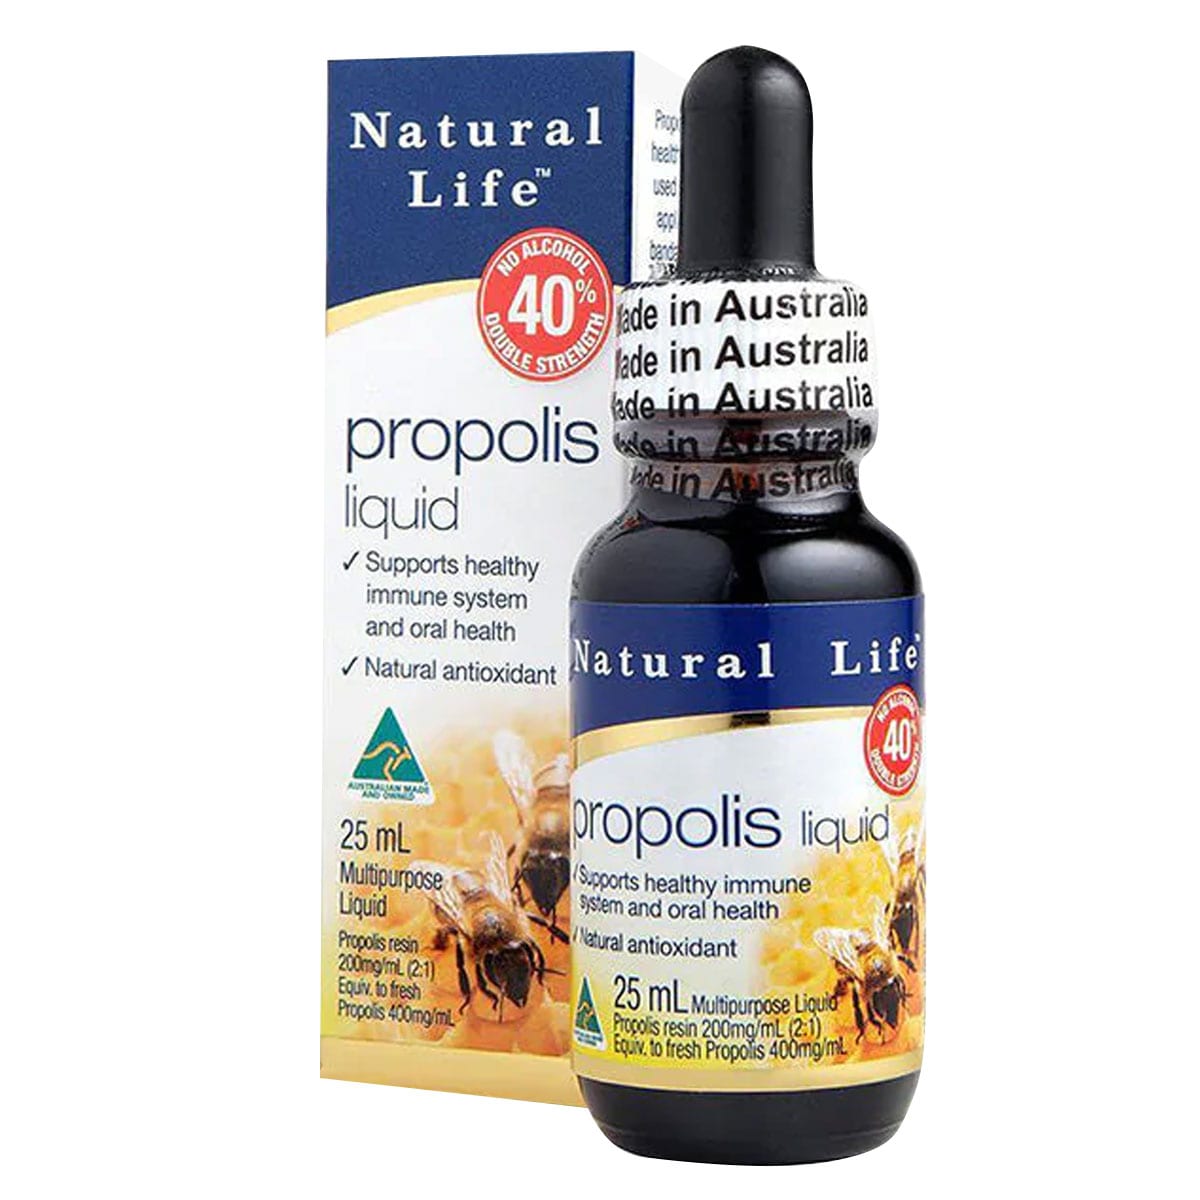 Natural Life Propolis Liquid 40% No Alcohol 25ml Australia